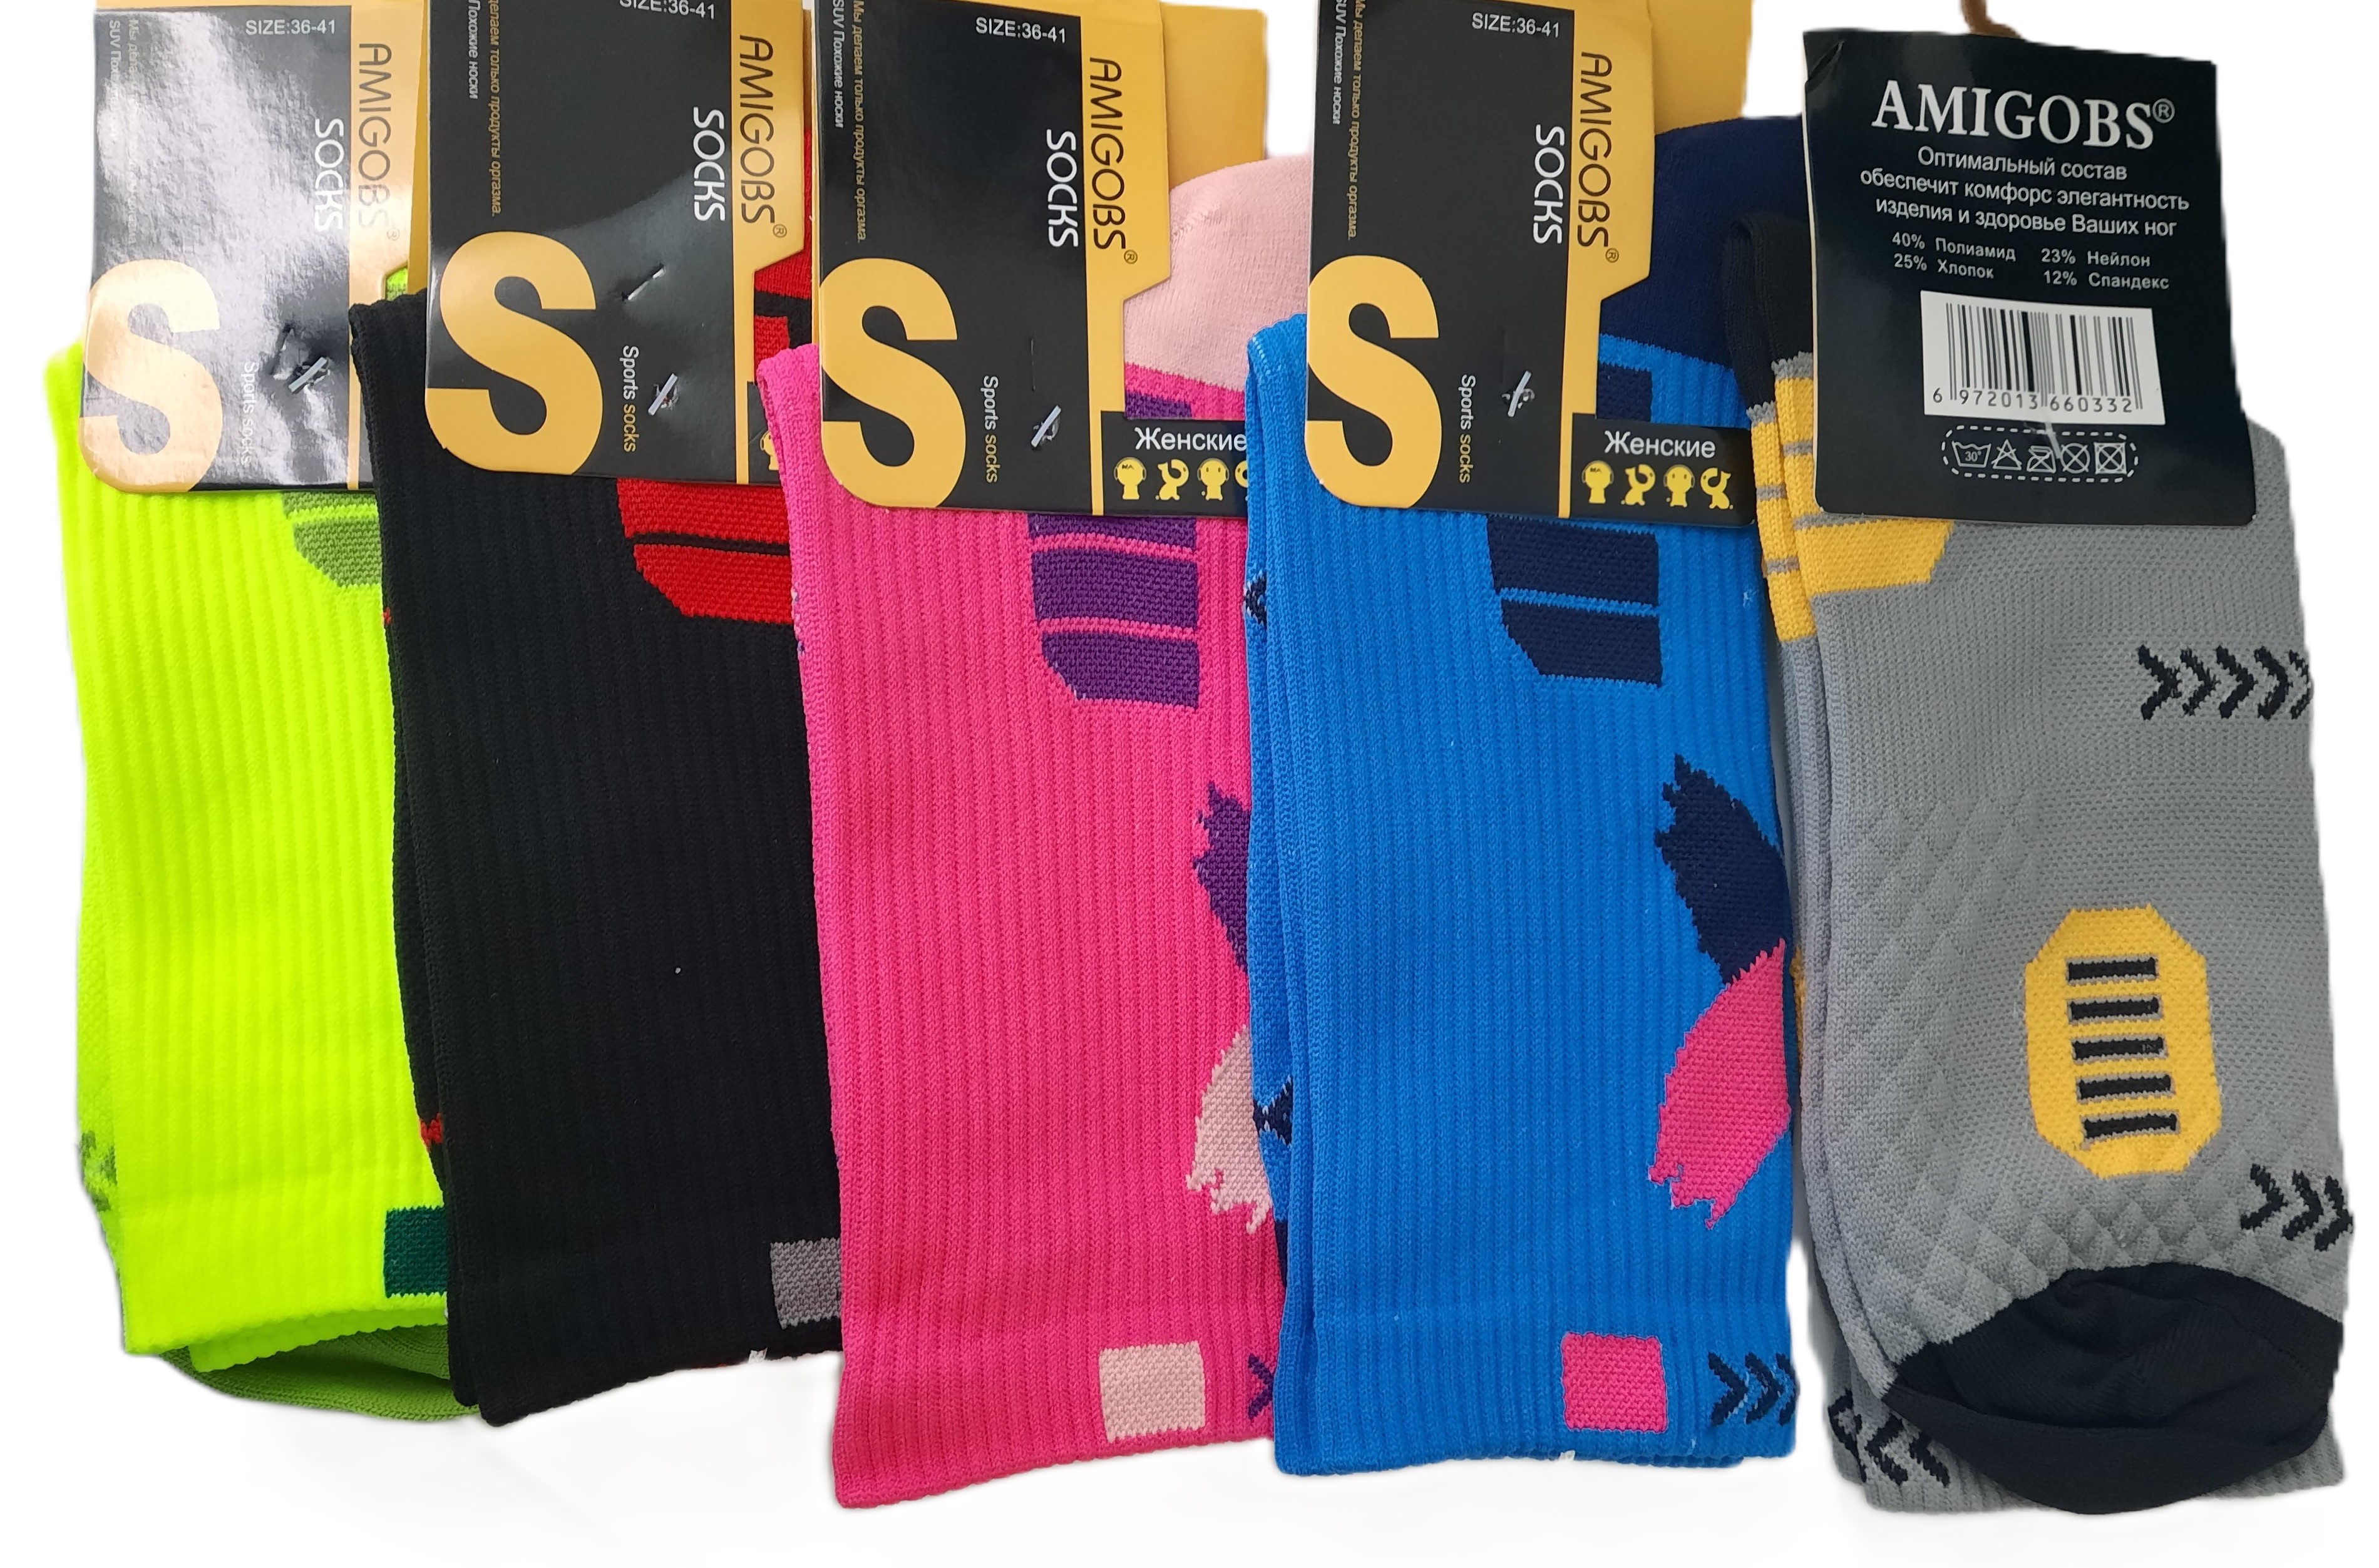 Комплект носков женских AMIGOBS SP-02 разноцветных 36-41, 5 пар